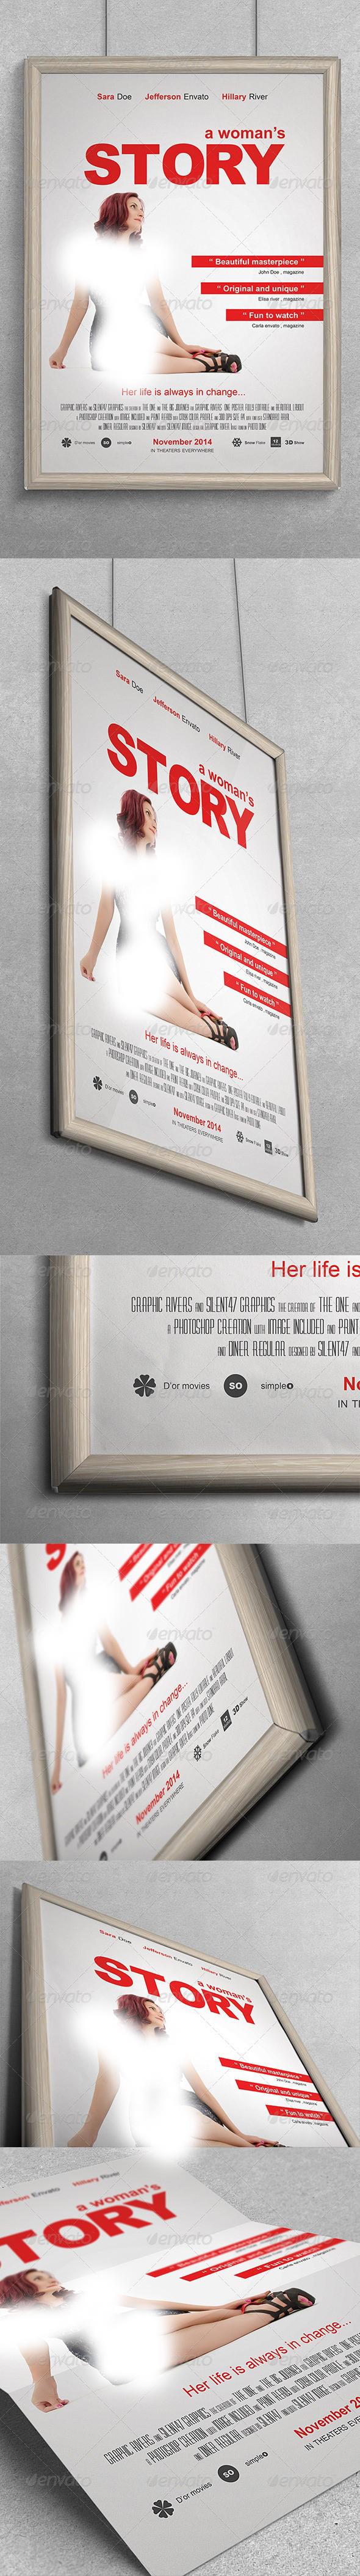 پوستر فیلم داستان یک زن